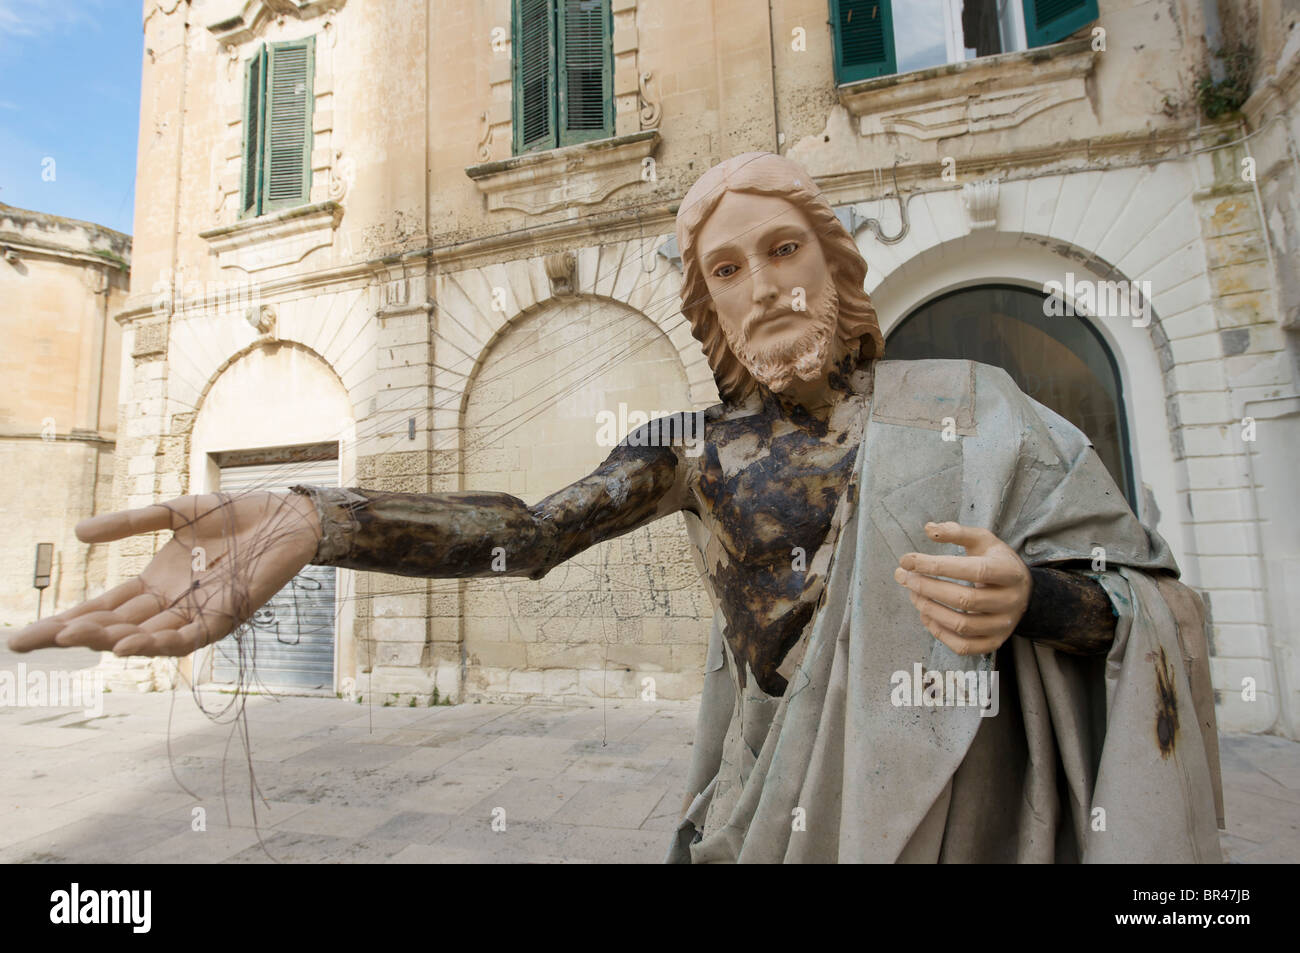 Jesus statue hand crafted  in papier-mache in Lecce, Duomo square Stock Photo